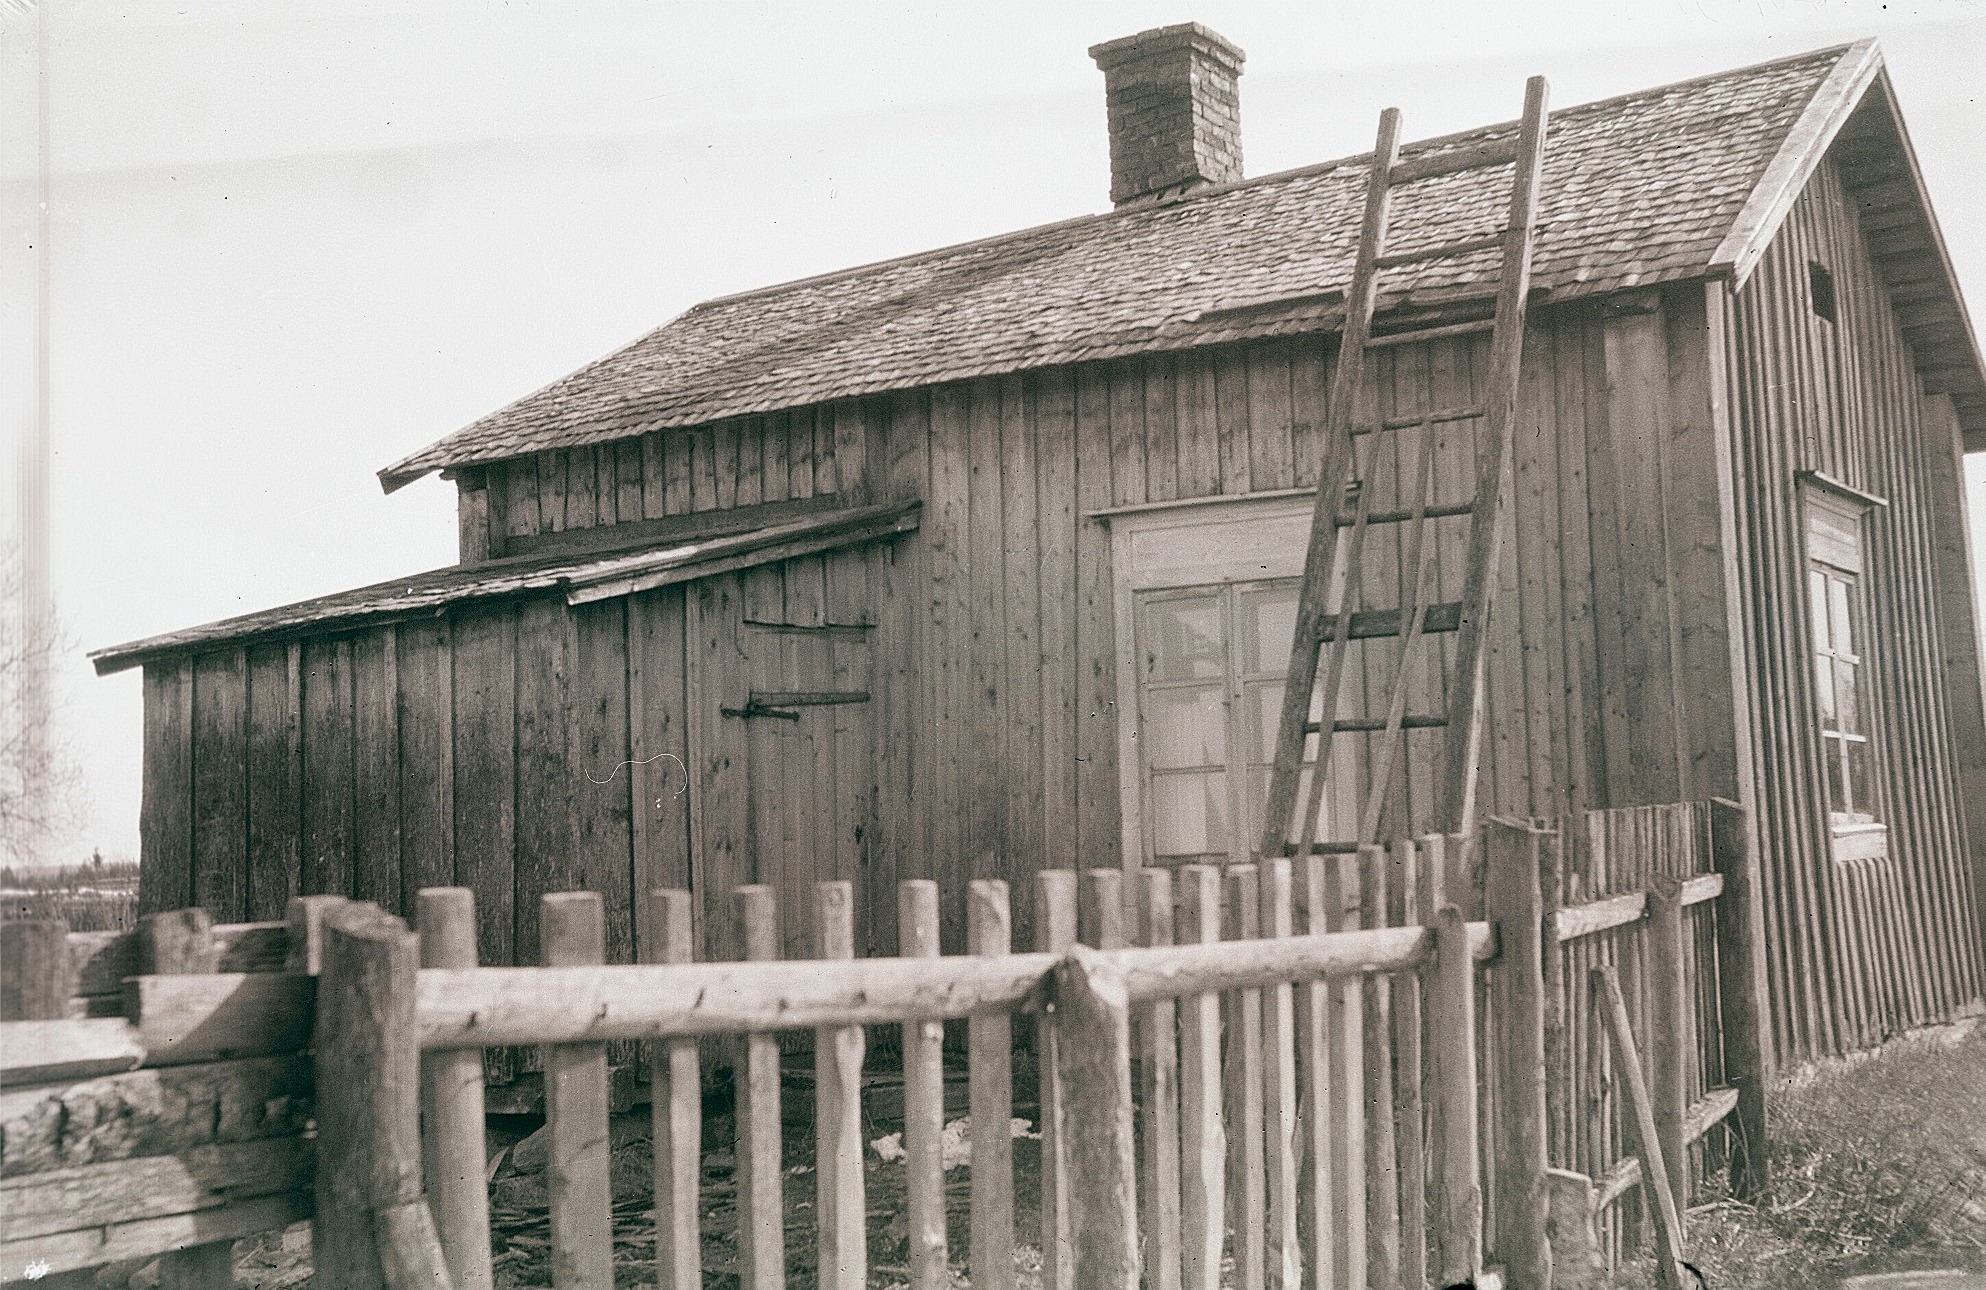 Mellan åren 1876 och 1926 höll Anna Lena Ådjers skola i denna stuga på Åbyggändan. 25 penni i veckan kostade det eleverna att lära sig bokstäverna och siffrorna